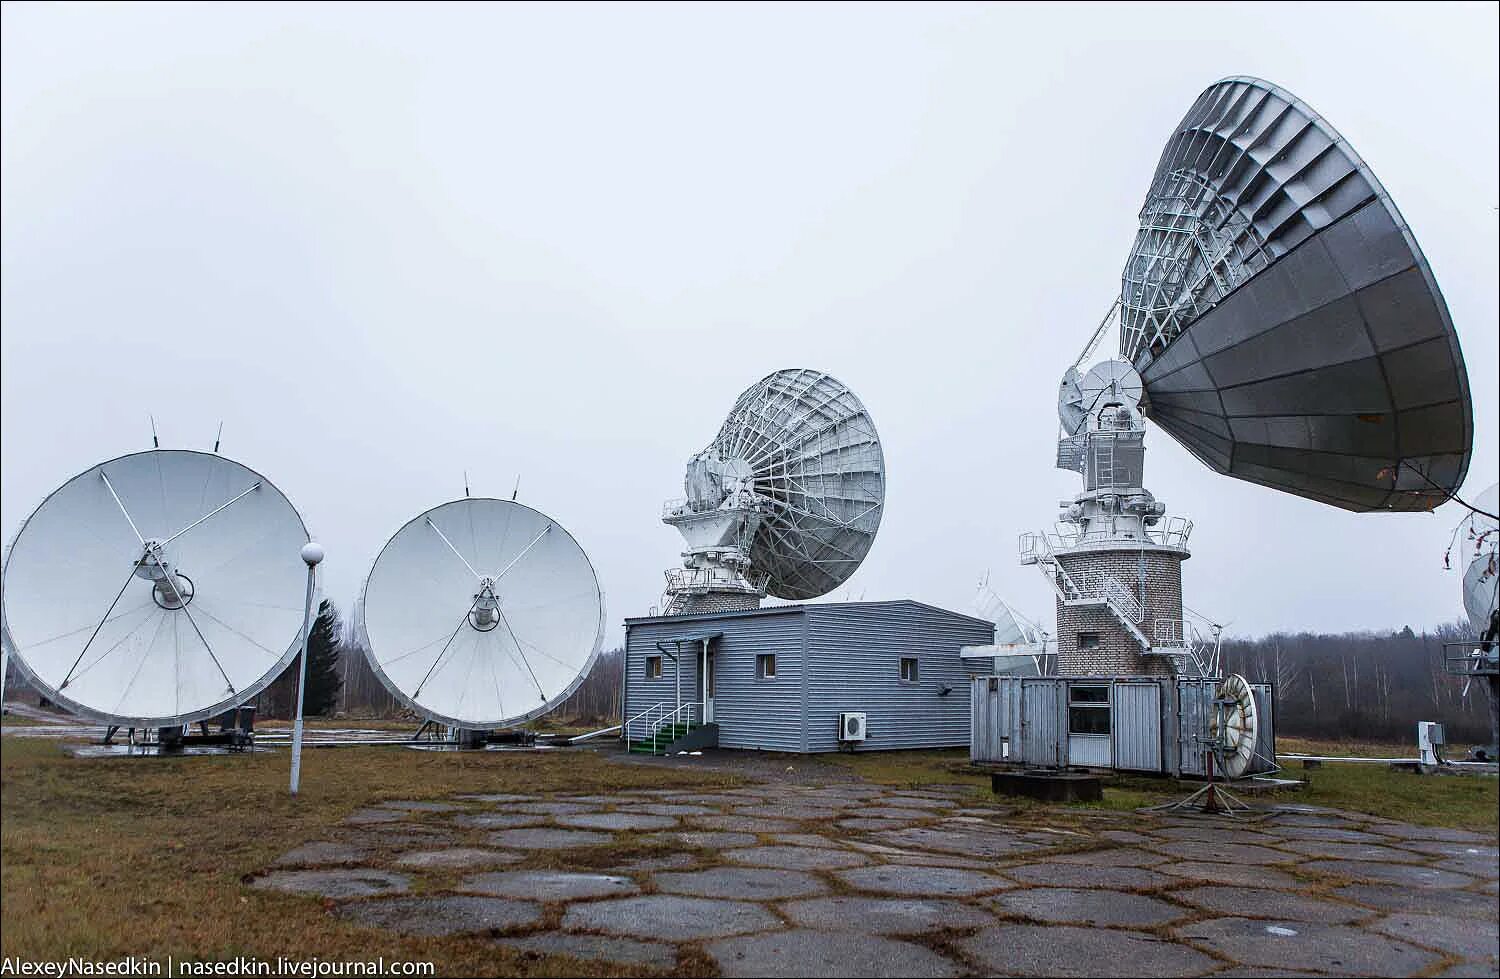 Земная станция связи. Центр космической связи Дубна. Р-440 комплекс спутниковой радиосвязи Кристалл. Центр спутниковой связи «Кристалл» Петушки. Земная станция спутниковой связи.